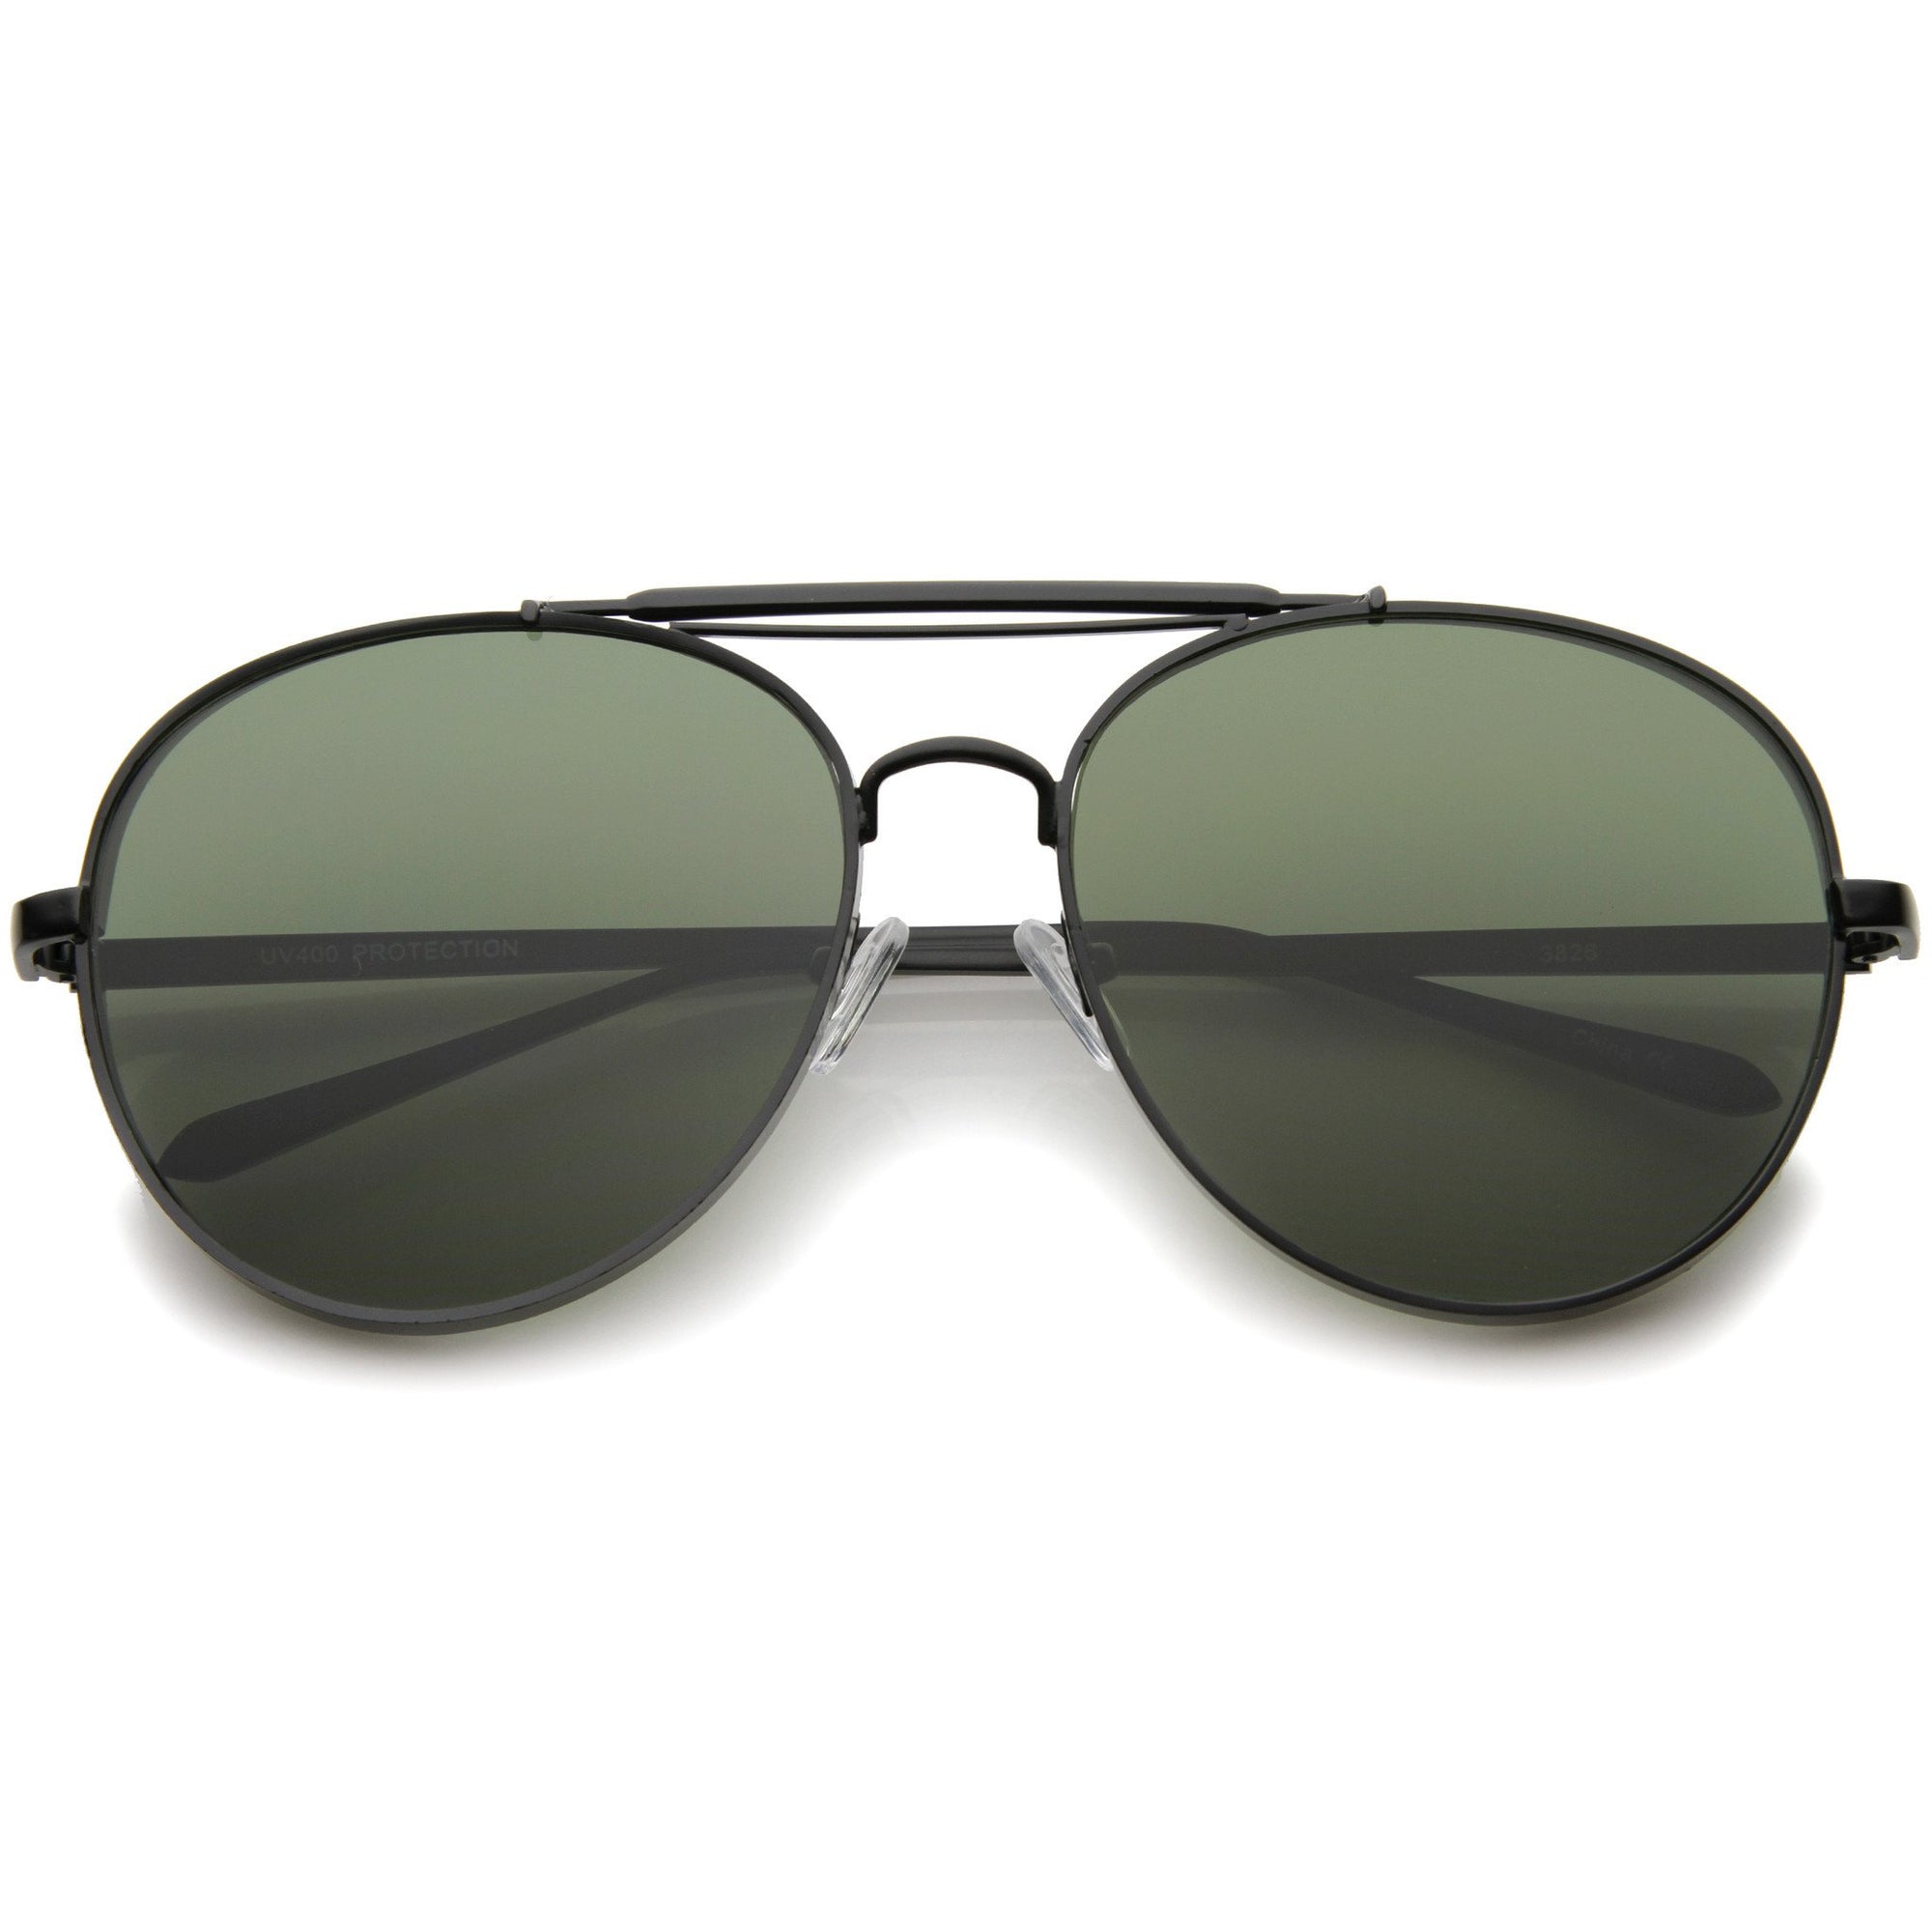 Modern Side Cover Flat Lens Aviator Sunglasses - zeroUV